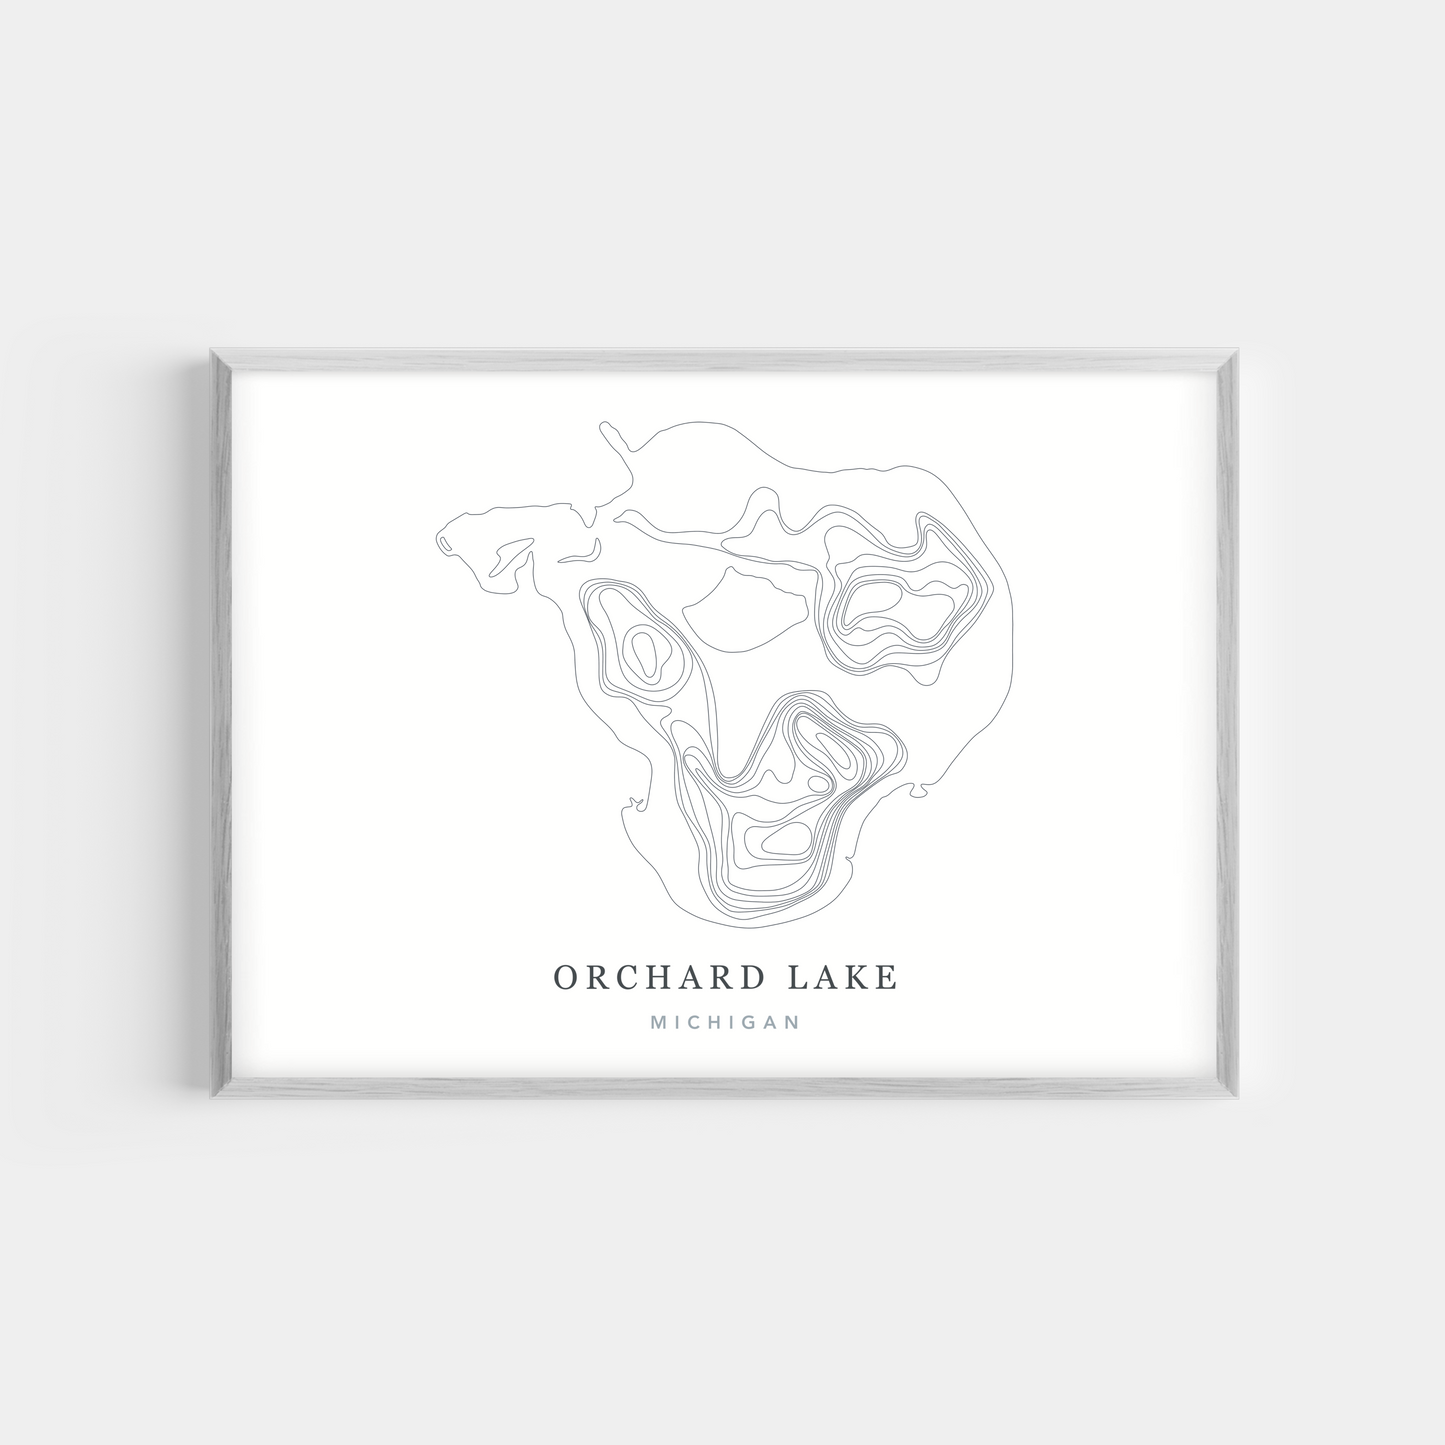 Orchard Lake, Michigan | Photo Print